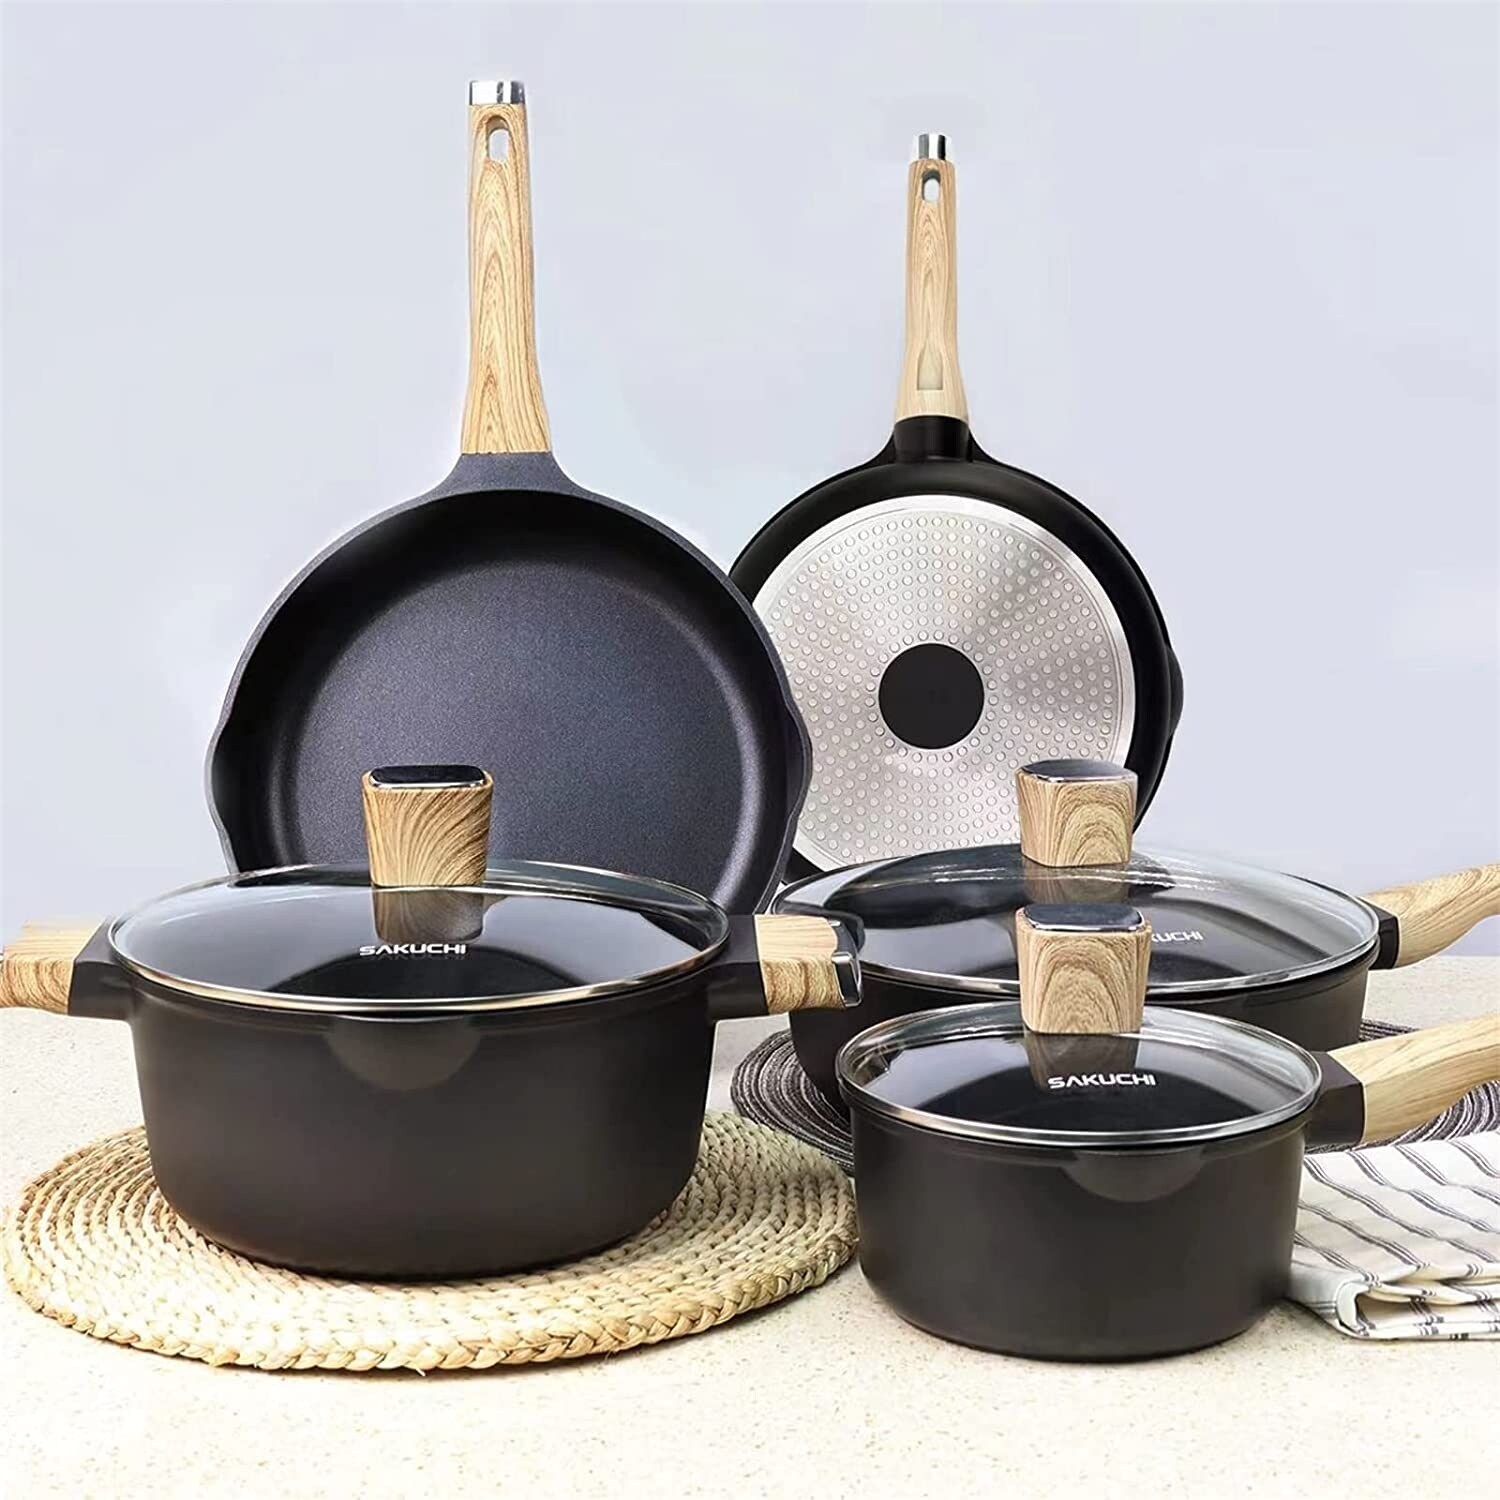 SAKUCHI 25 Piece Pot & Pan Set, Nonstick Granite Coating with Utensils